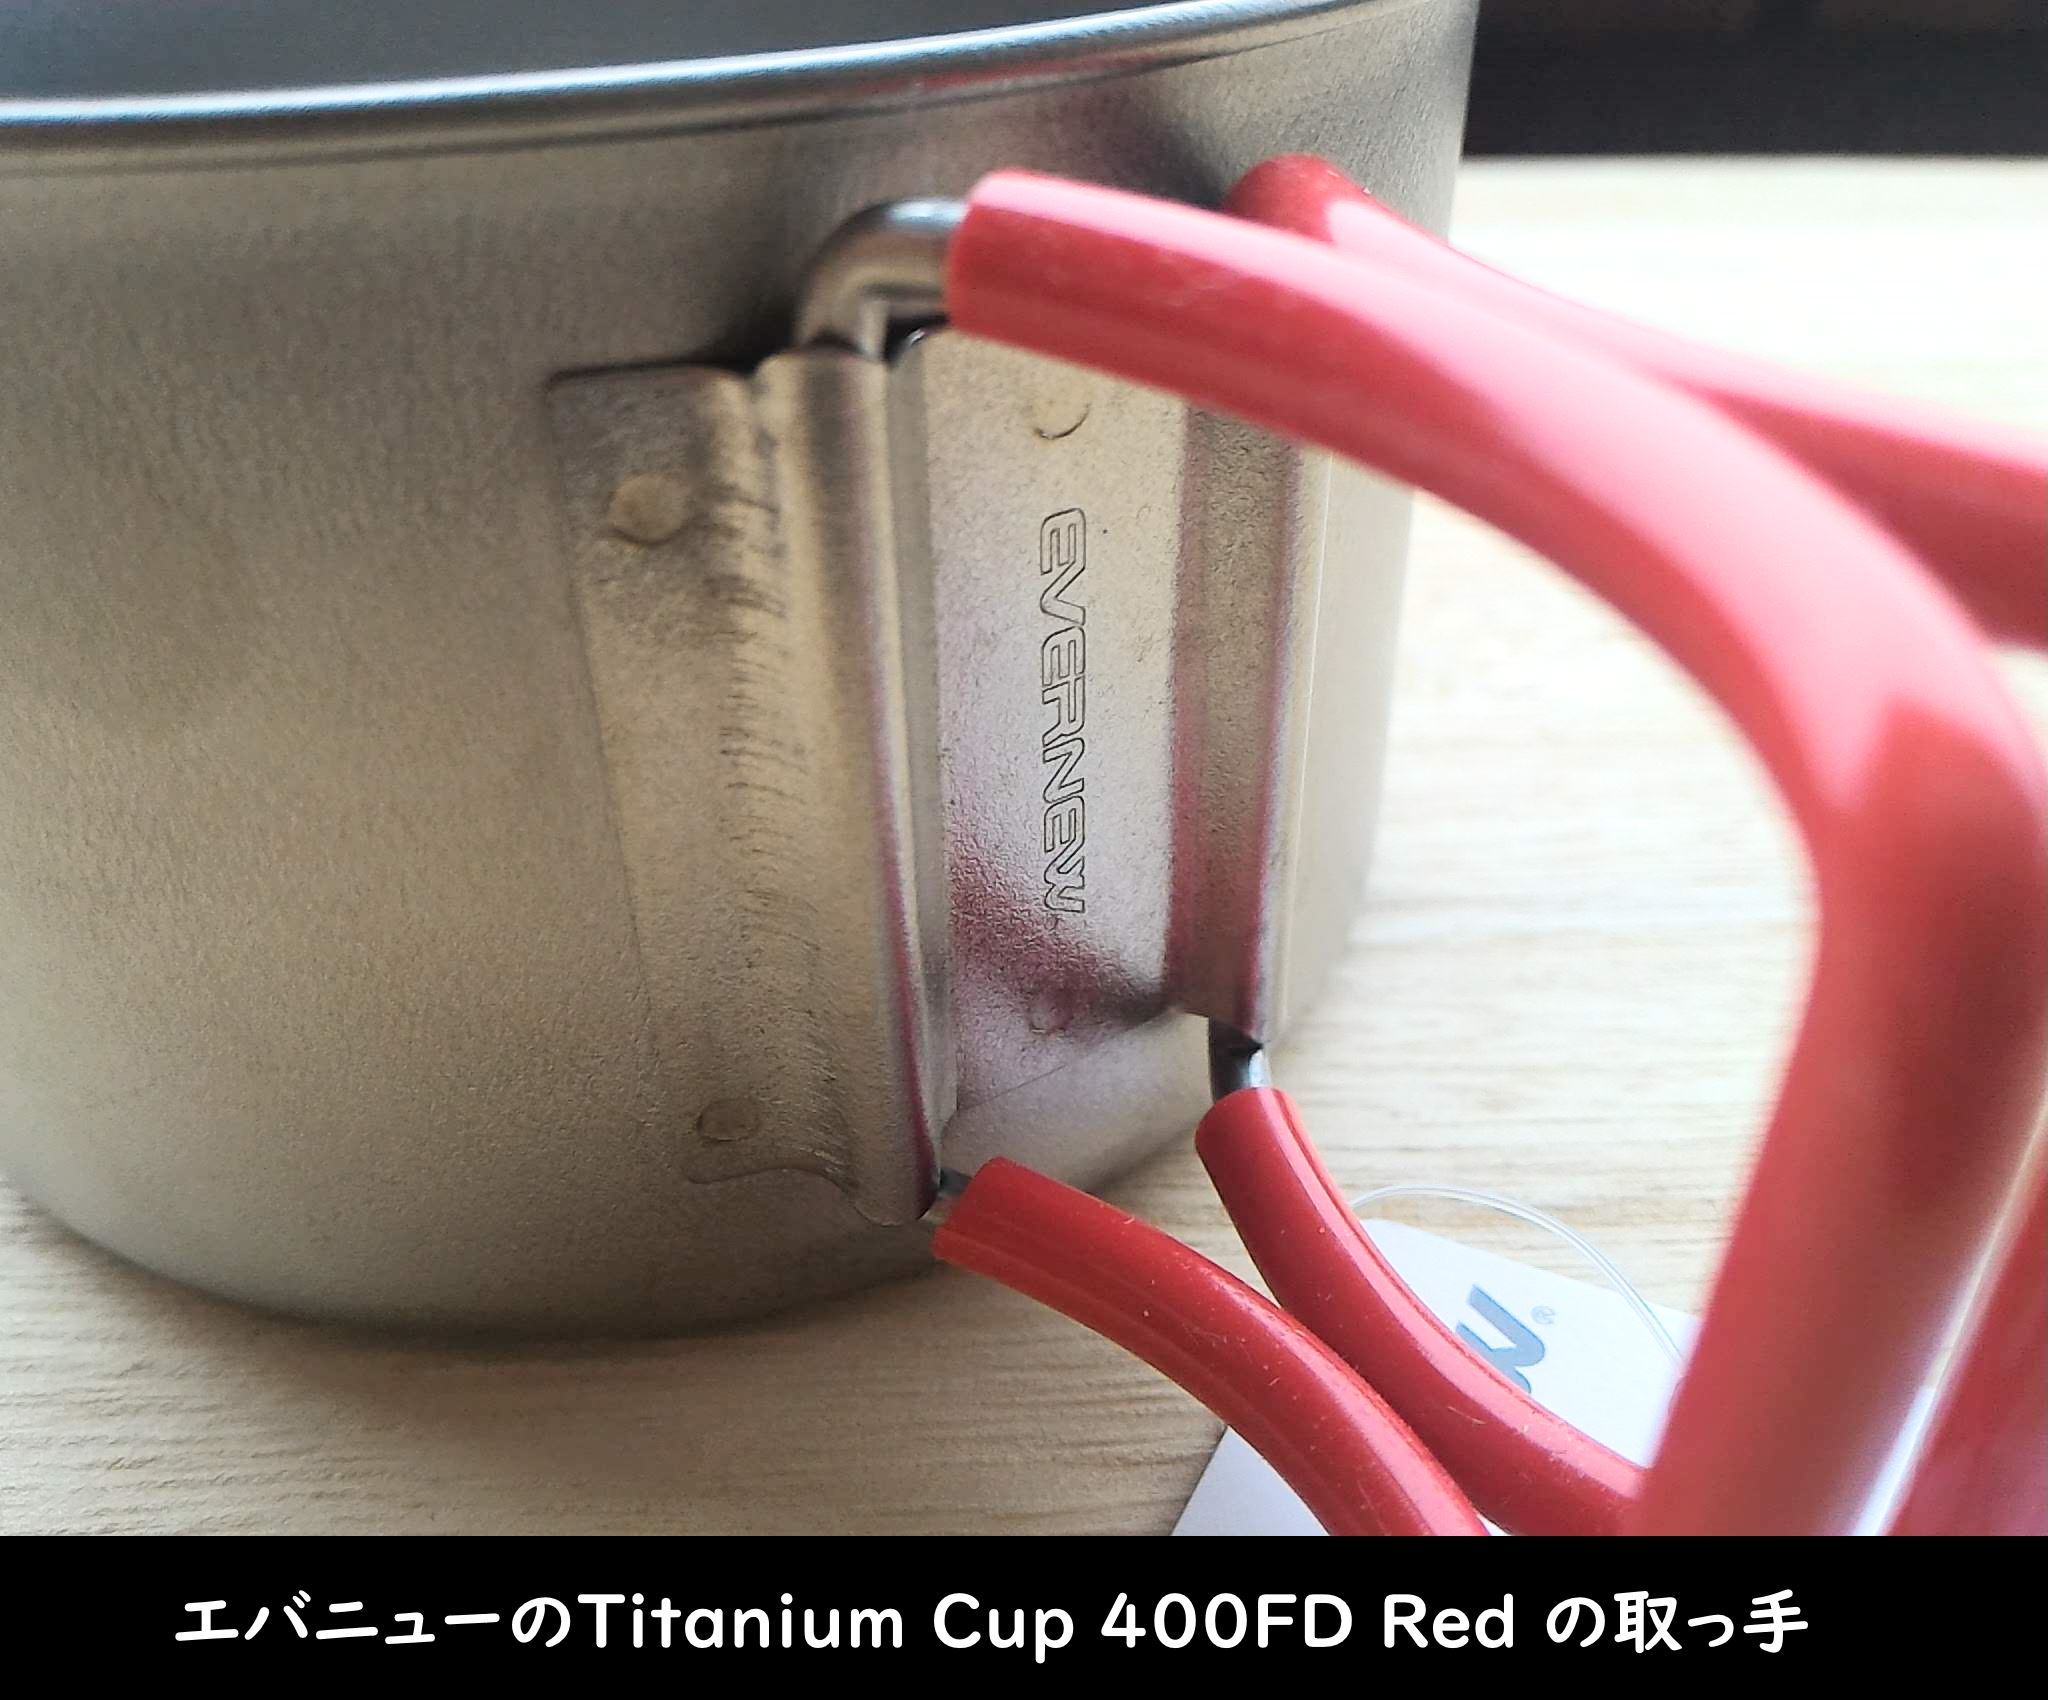 エバニューの「Titanium Cup 400FD Red」取っ手